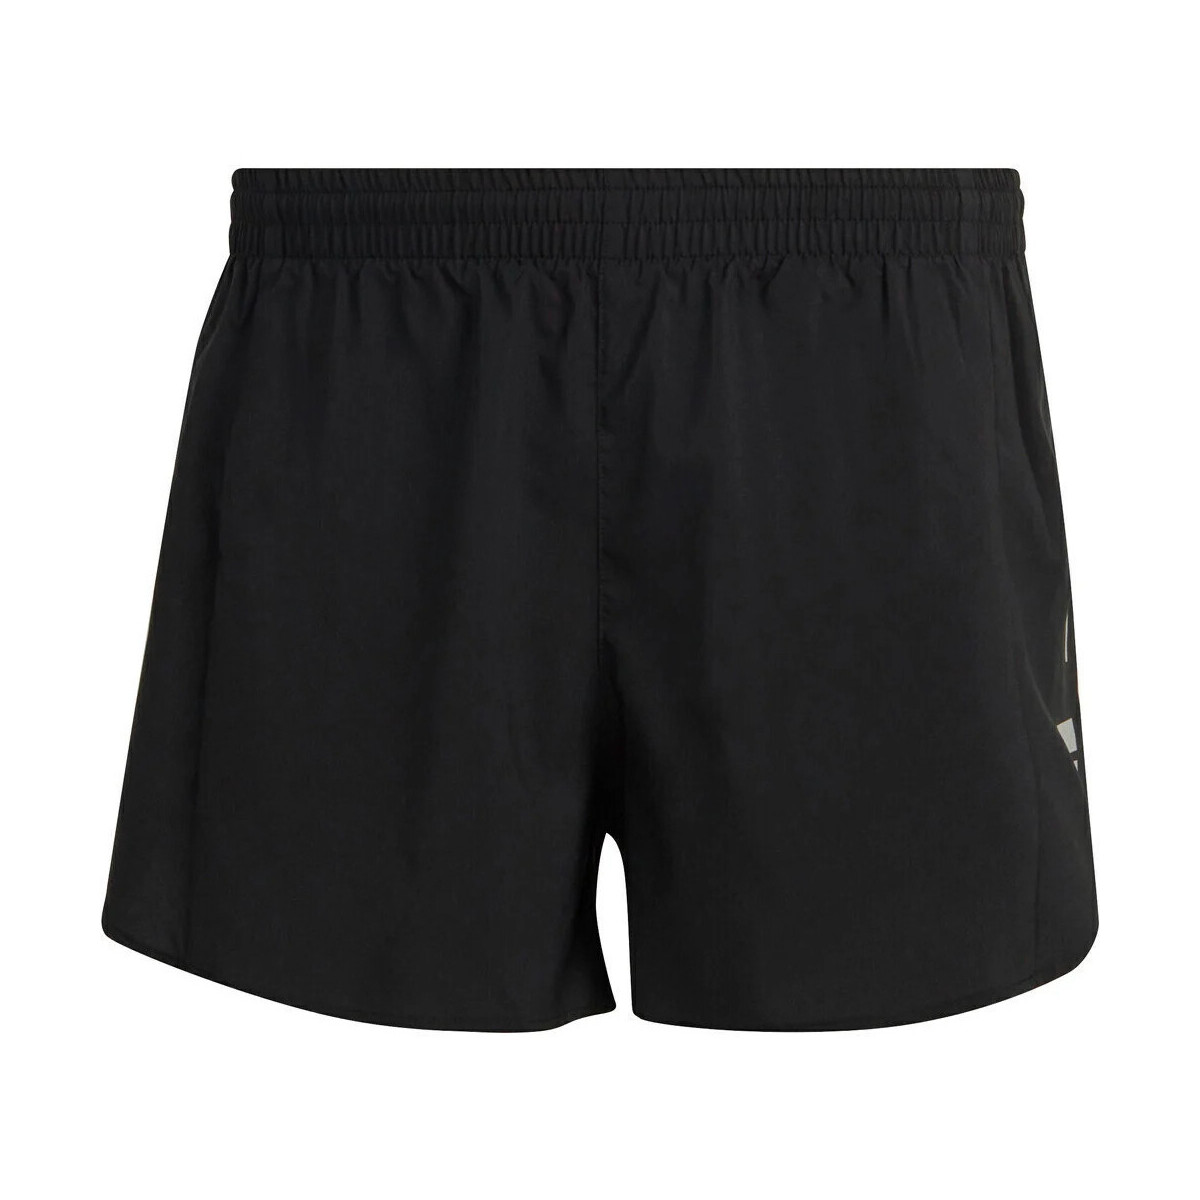 textil Hombre Shorts / Bermudas adidas Originals OTR SPLIT SHORT Negro